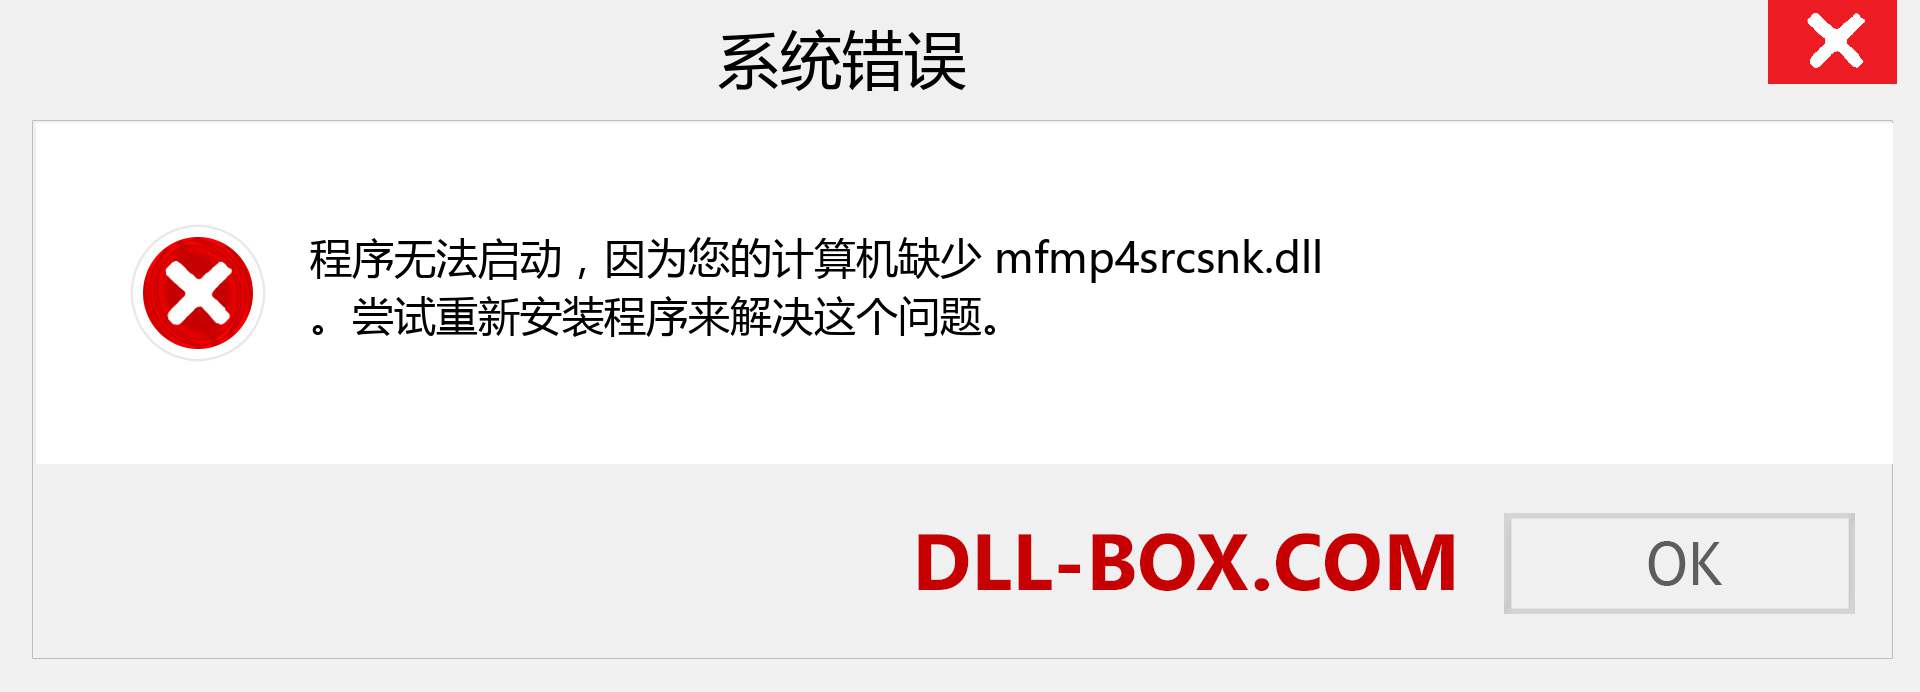 mfmp4srcsnk.dll 文件丢失？。 适用于 Windows 7、8、10 的下载 - 修复 Windows、照片、图像上的 mfmp4srcsnk dll 丢失错误